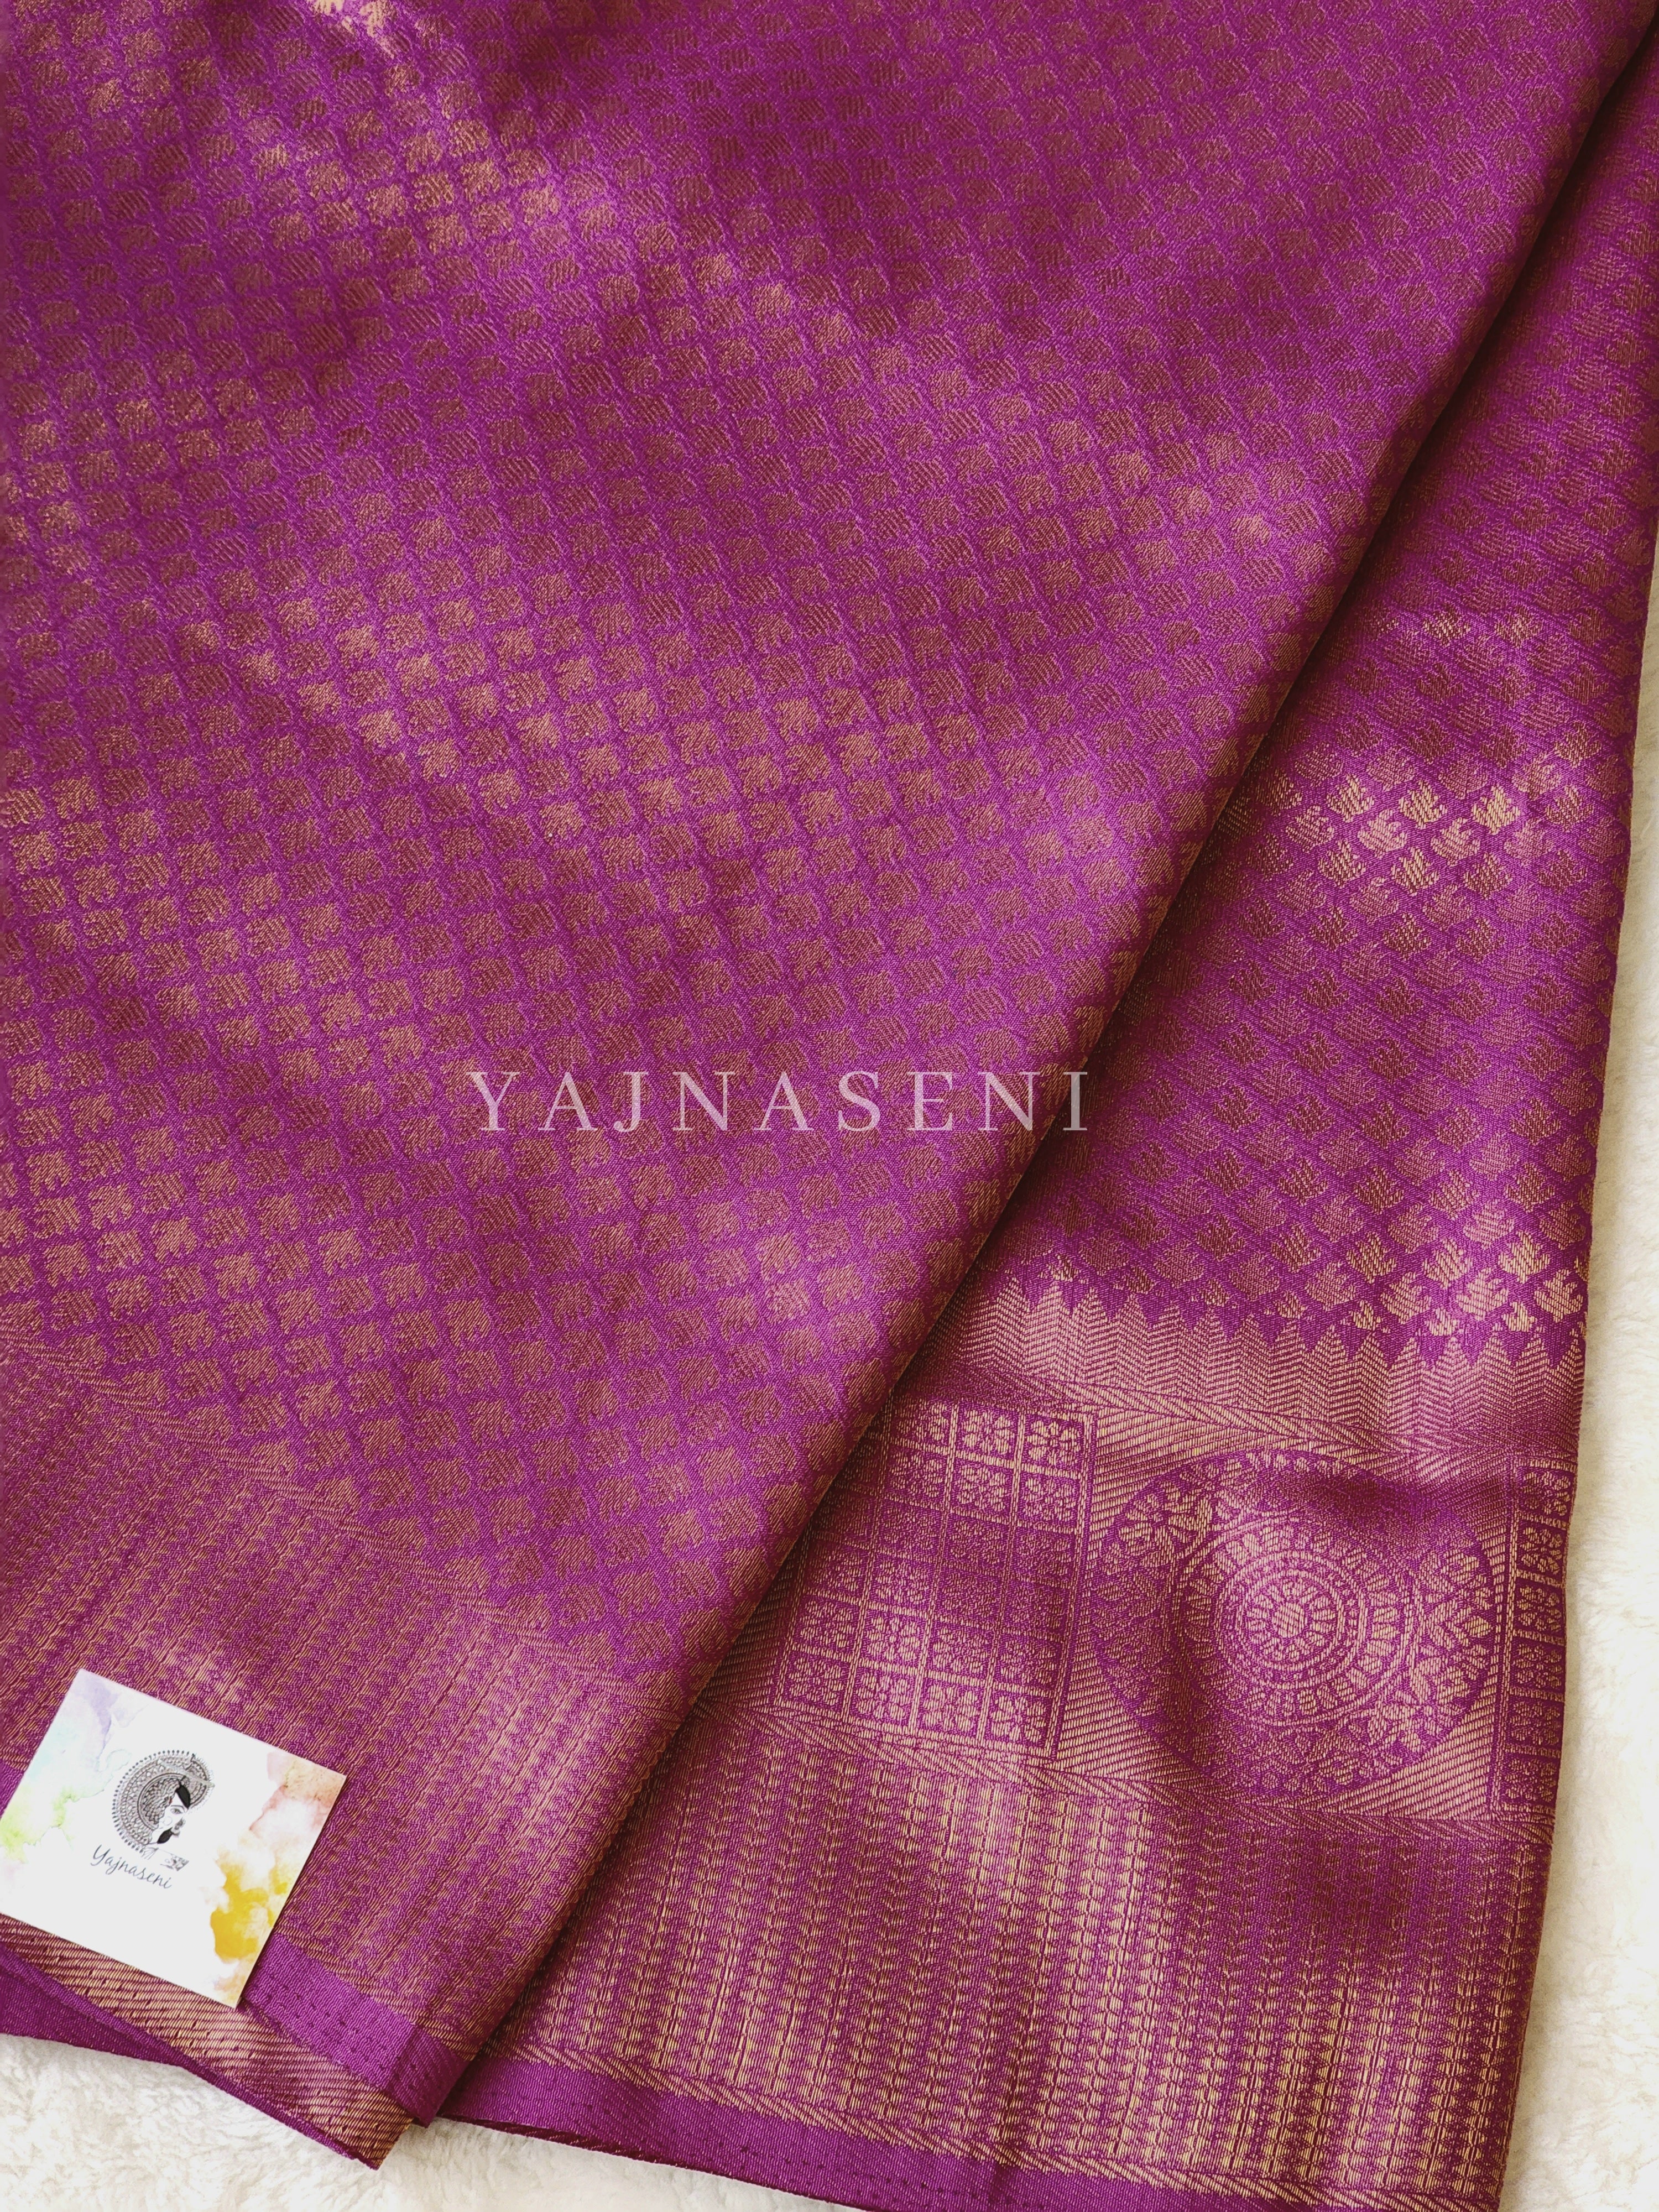 Banarasi Brocade Soft Silk Saree - Purple x Green